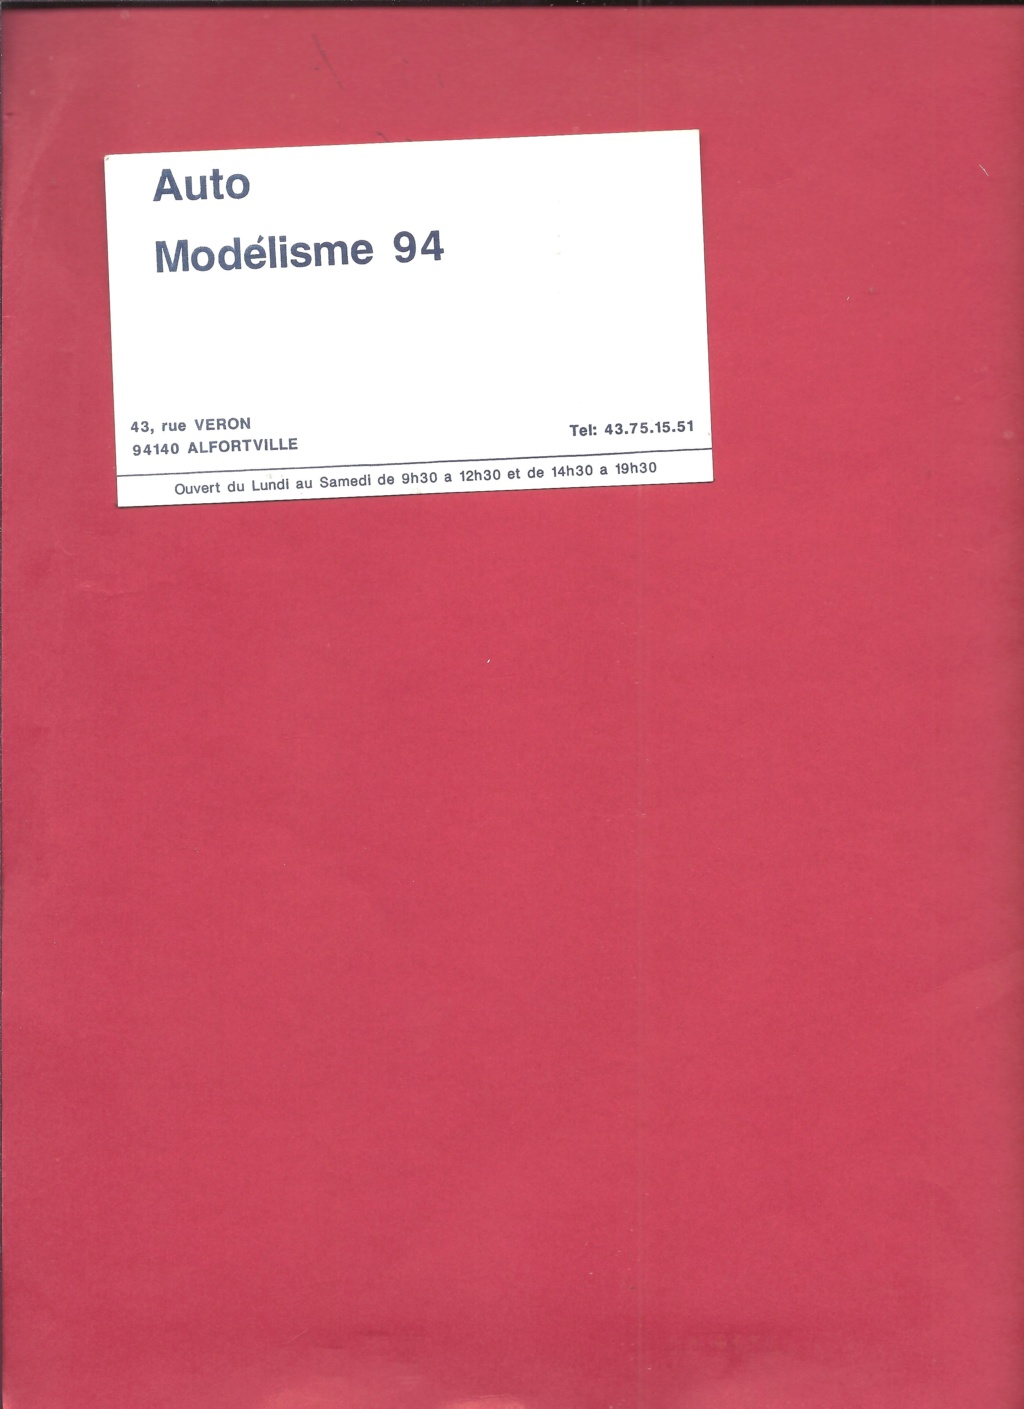 [PROVENCE MOULAGE 1989] Pochette avec catalogues et tarif revendeur 1989 Proven11